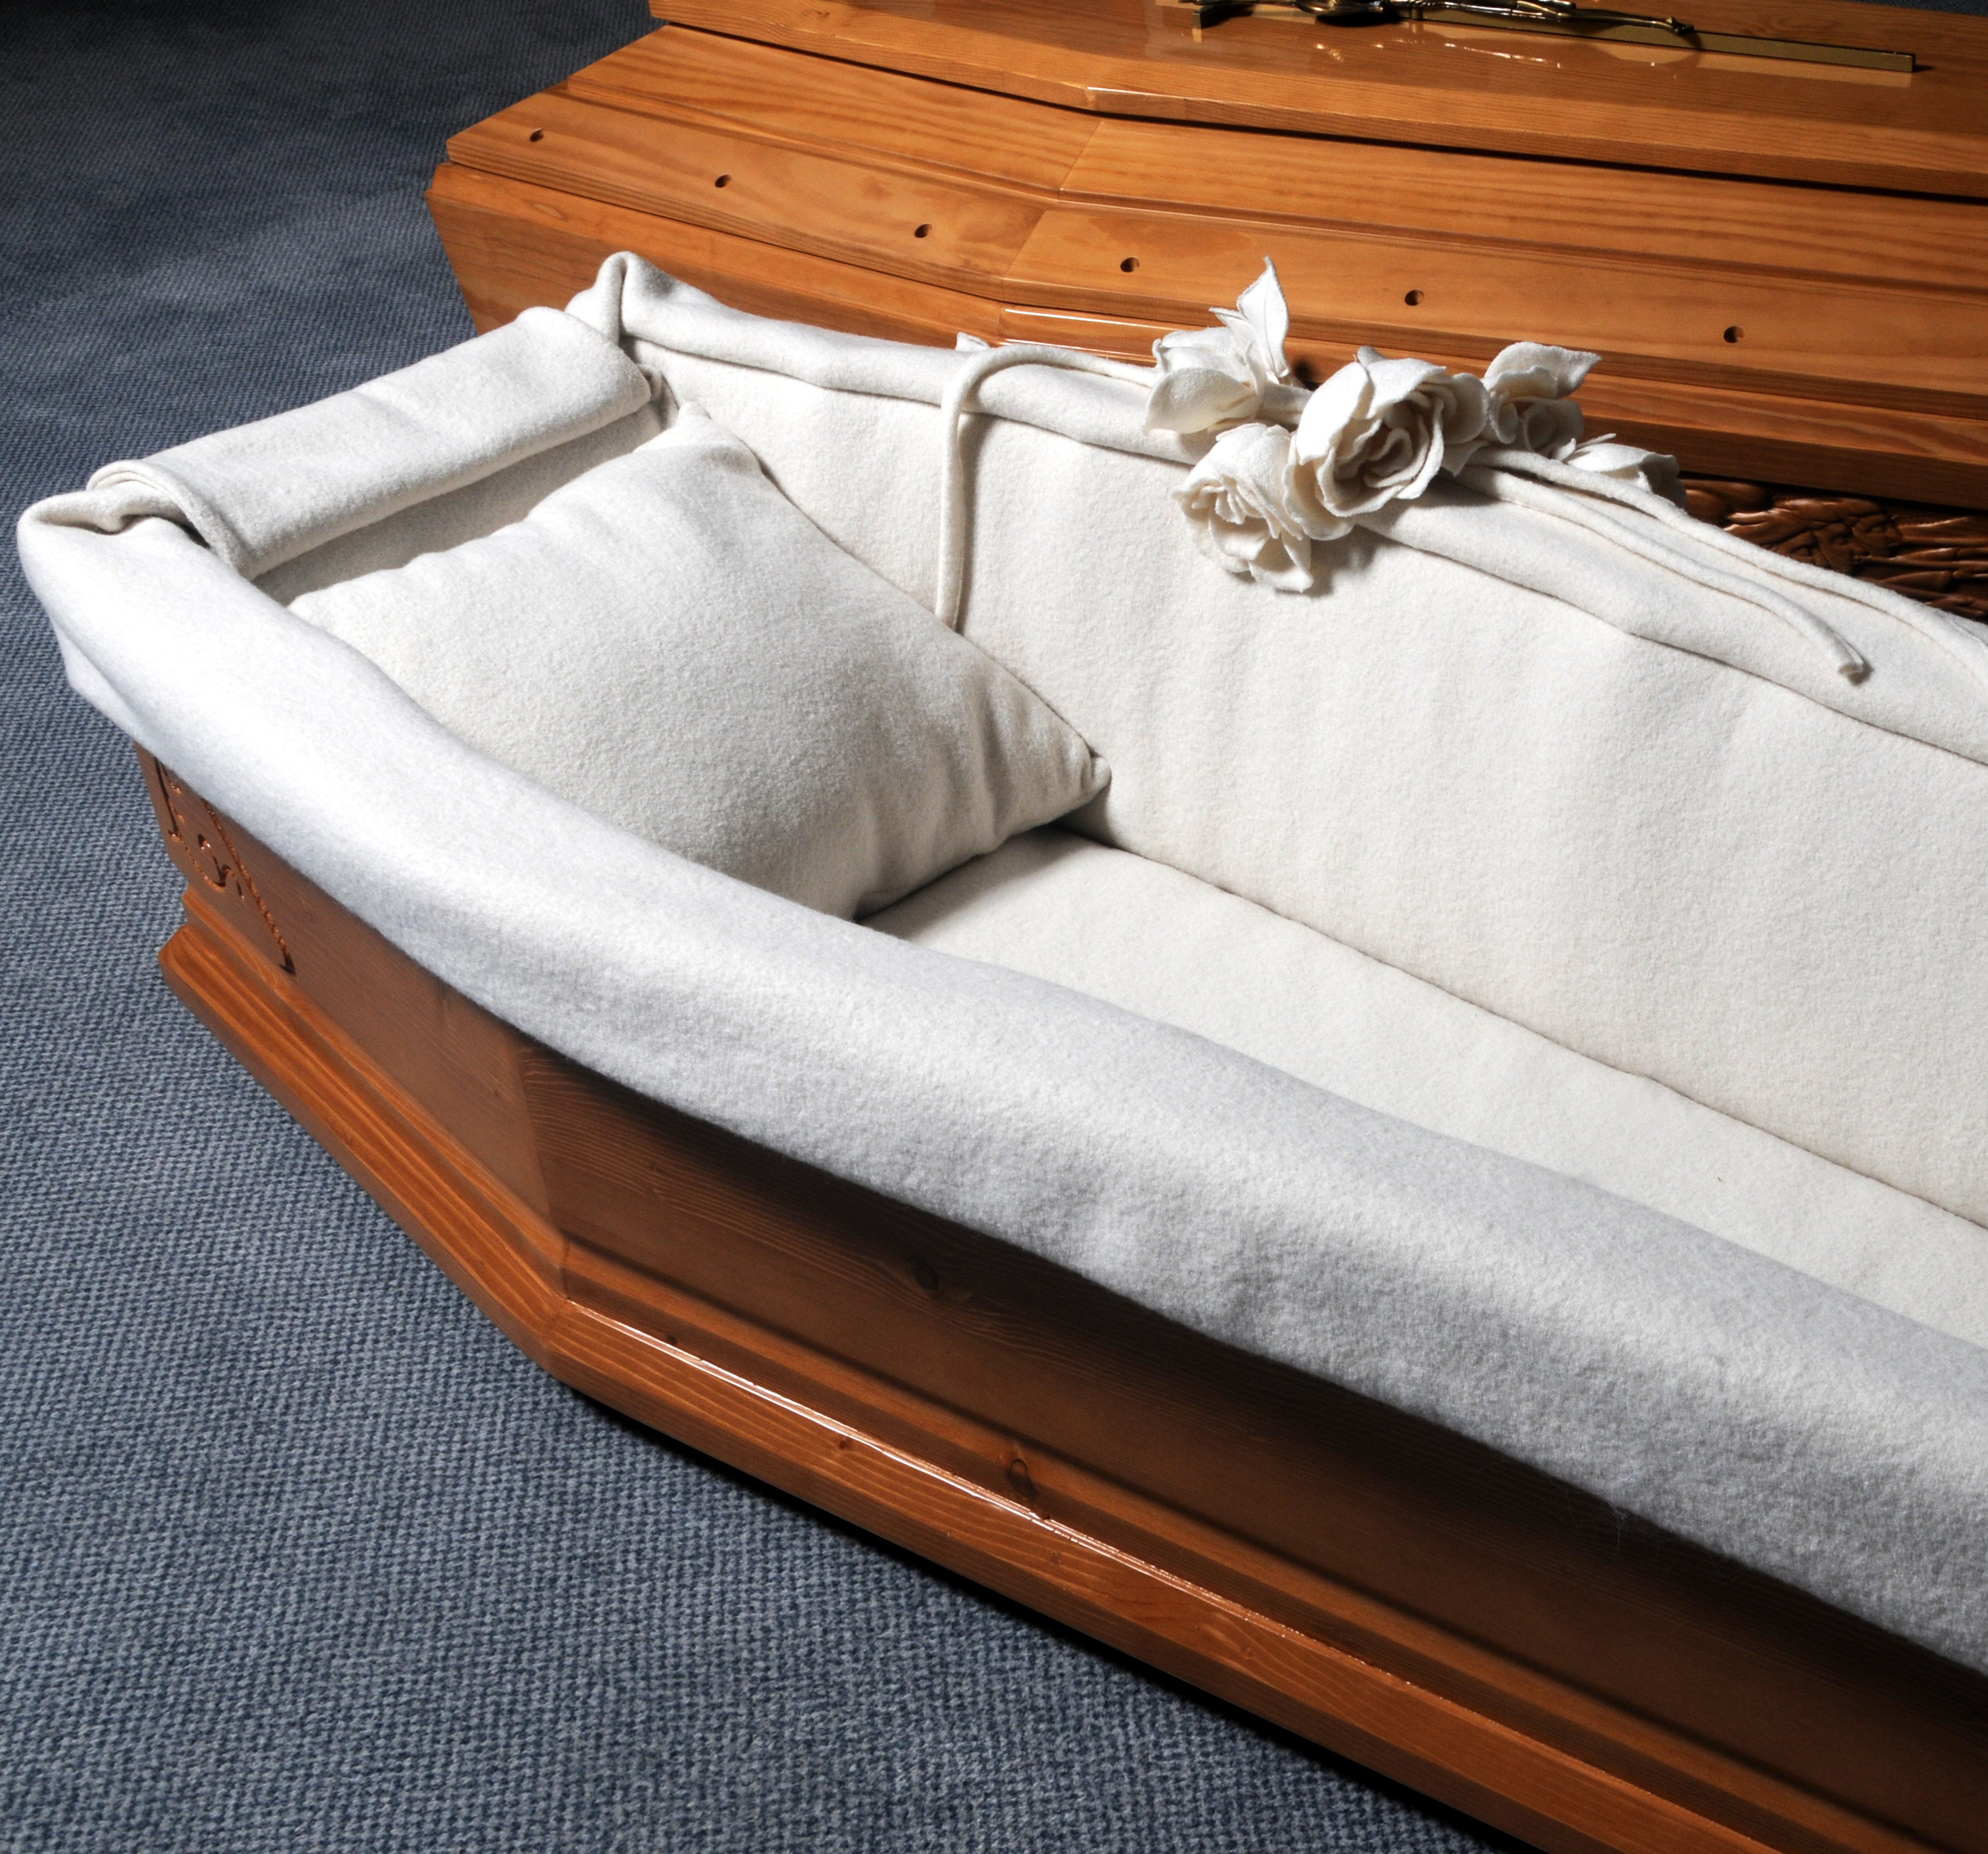 Les arts funéraires, capitons et cercueils